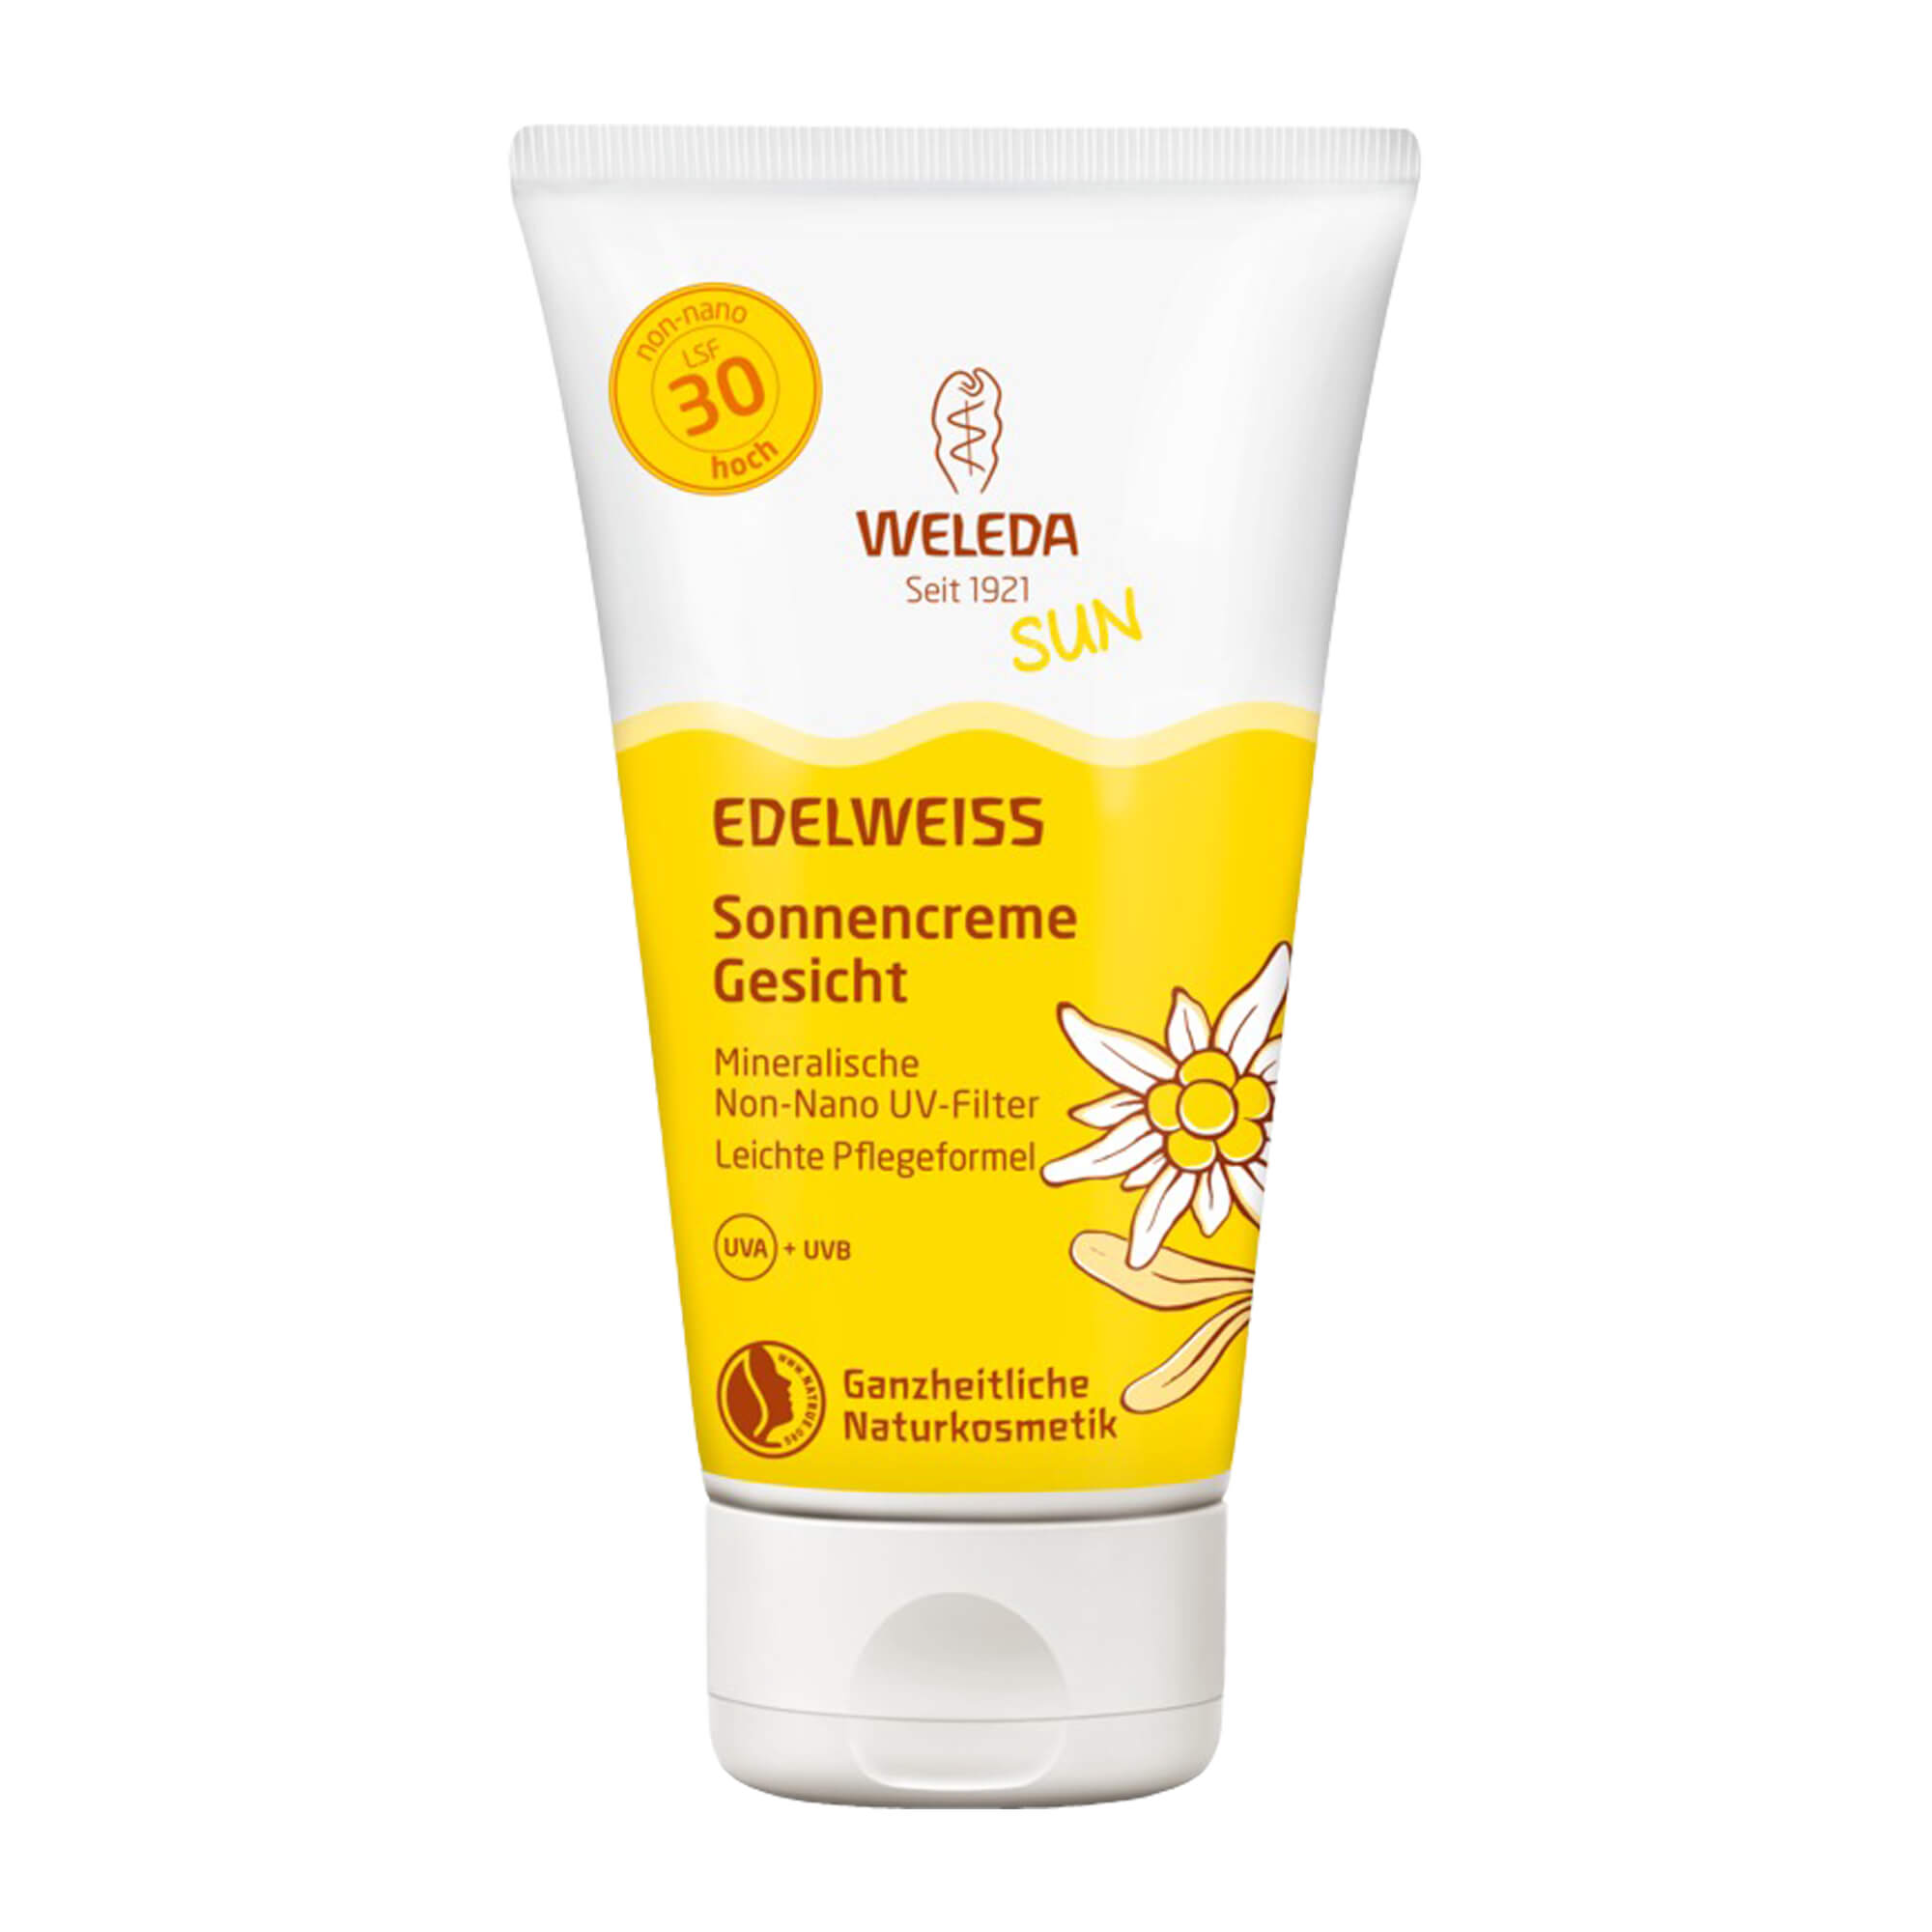 Sofortschutz mit LSF 30 (hoch) vor schädlichen UV-Strahlen und UV-induzierter Hautalterung.